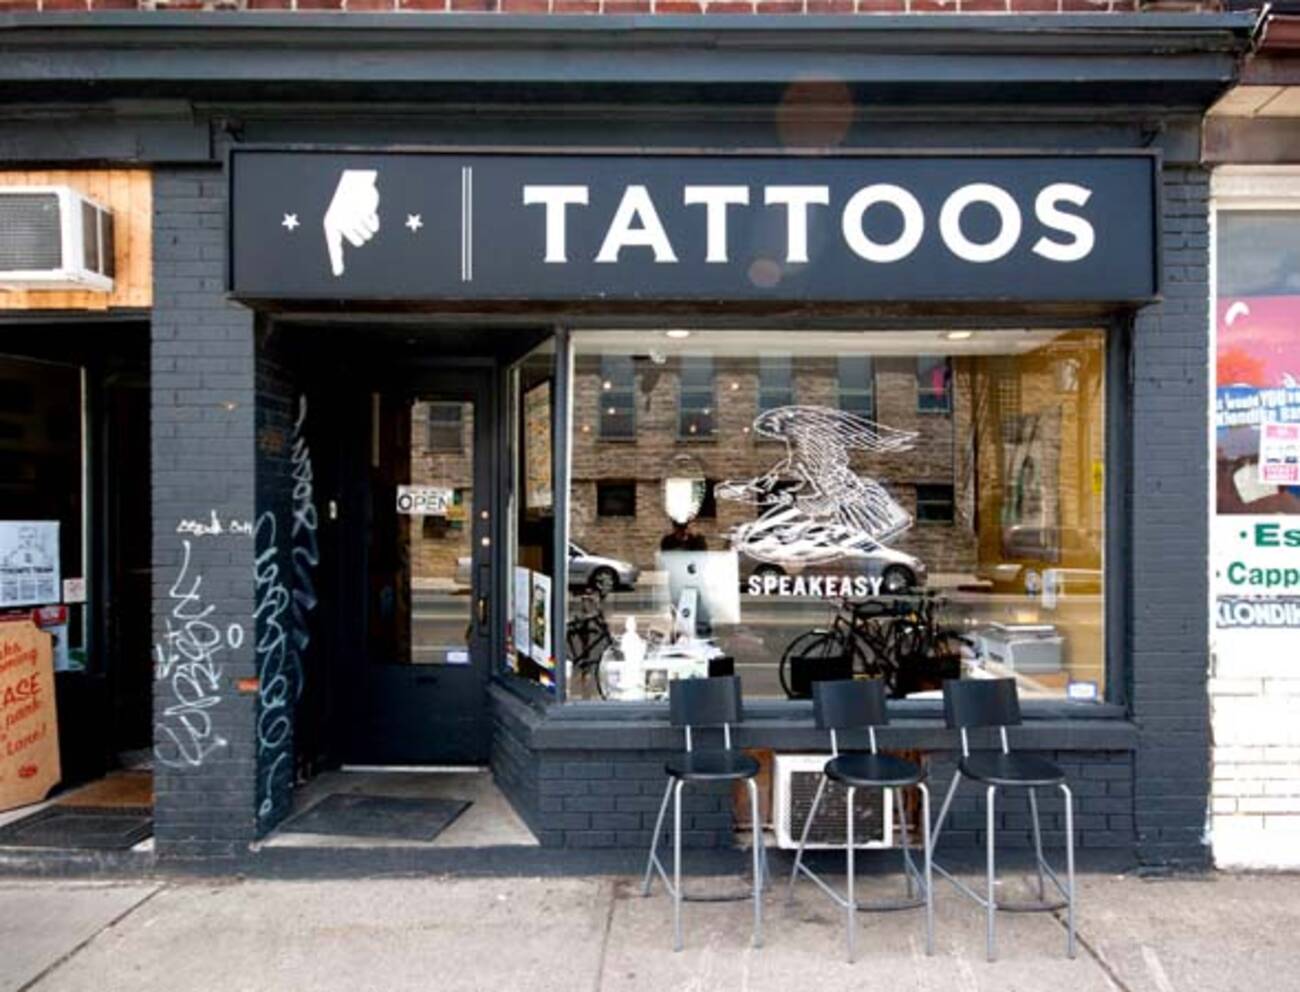 Inside Harbord street's tattoo shop